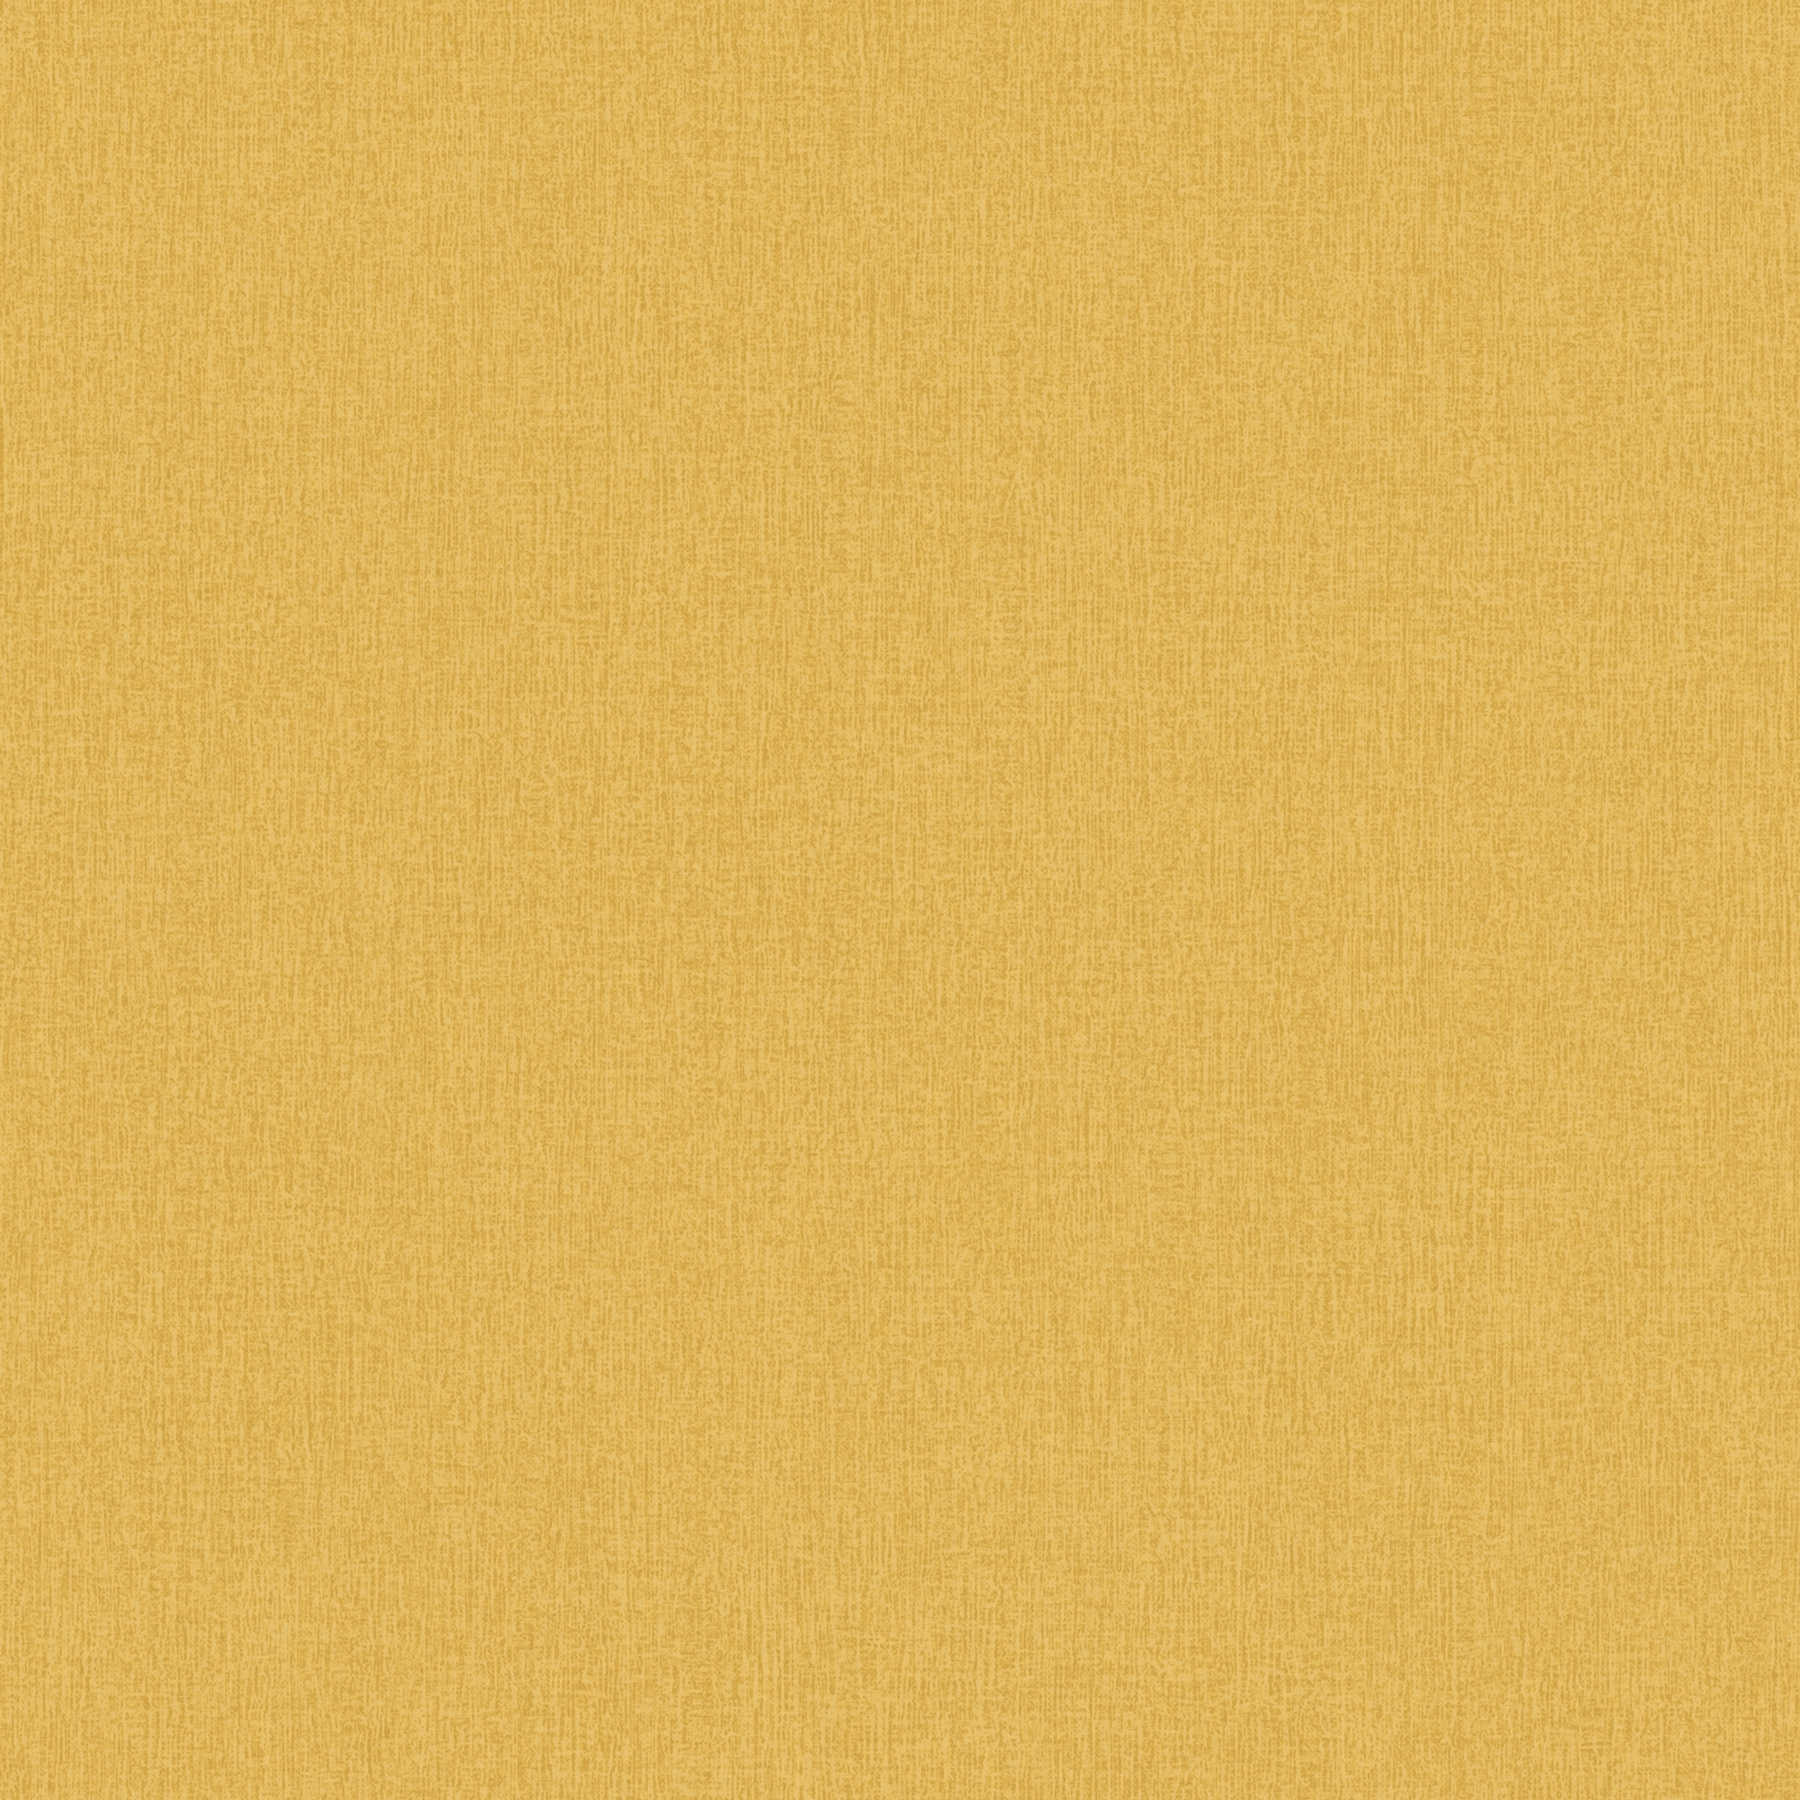 Papier peint uni aspect textile, couleur chinée - jaune
